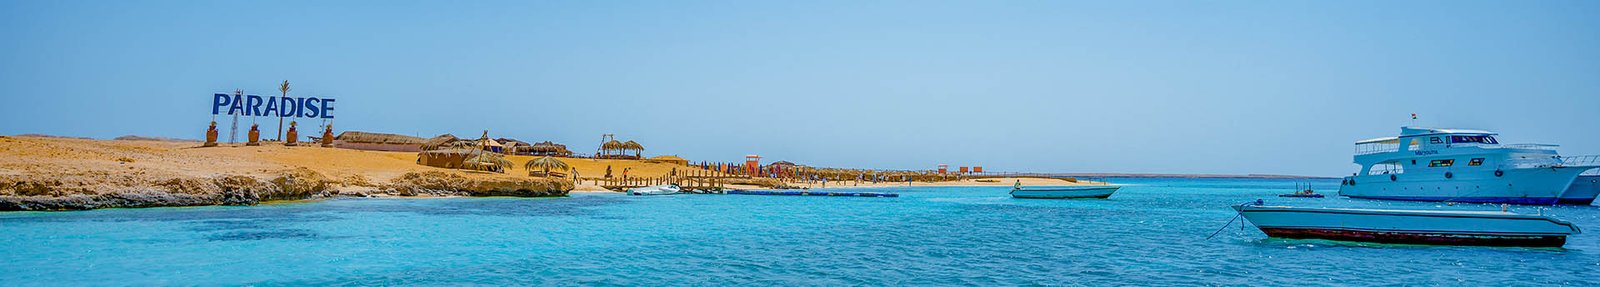 About us - Paradise Island Hurghada